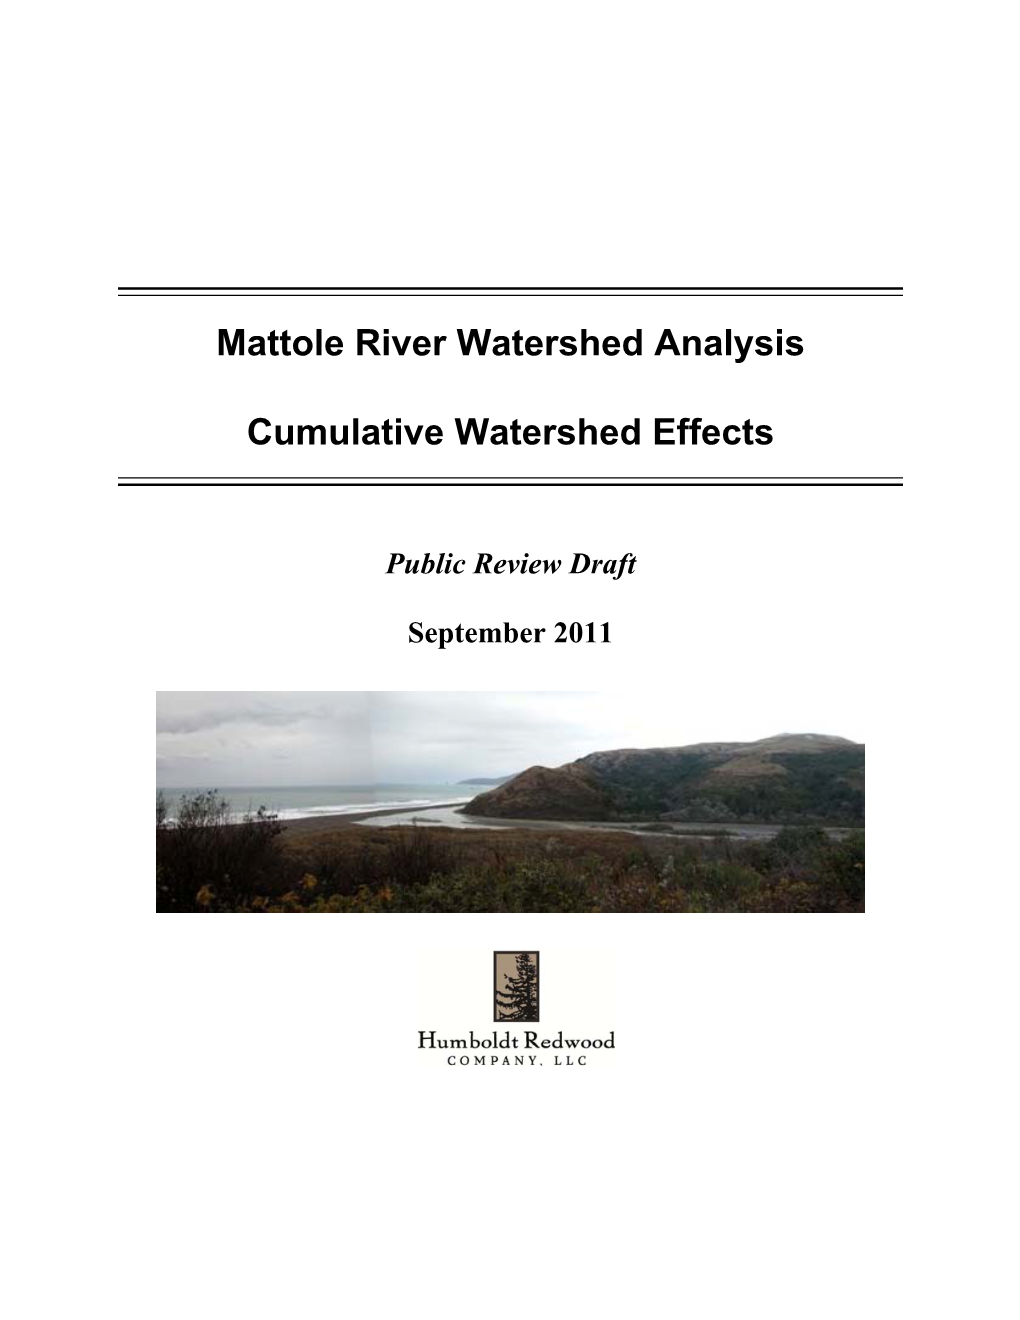 Mattole River Cumulative Effects